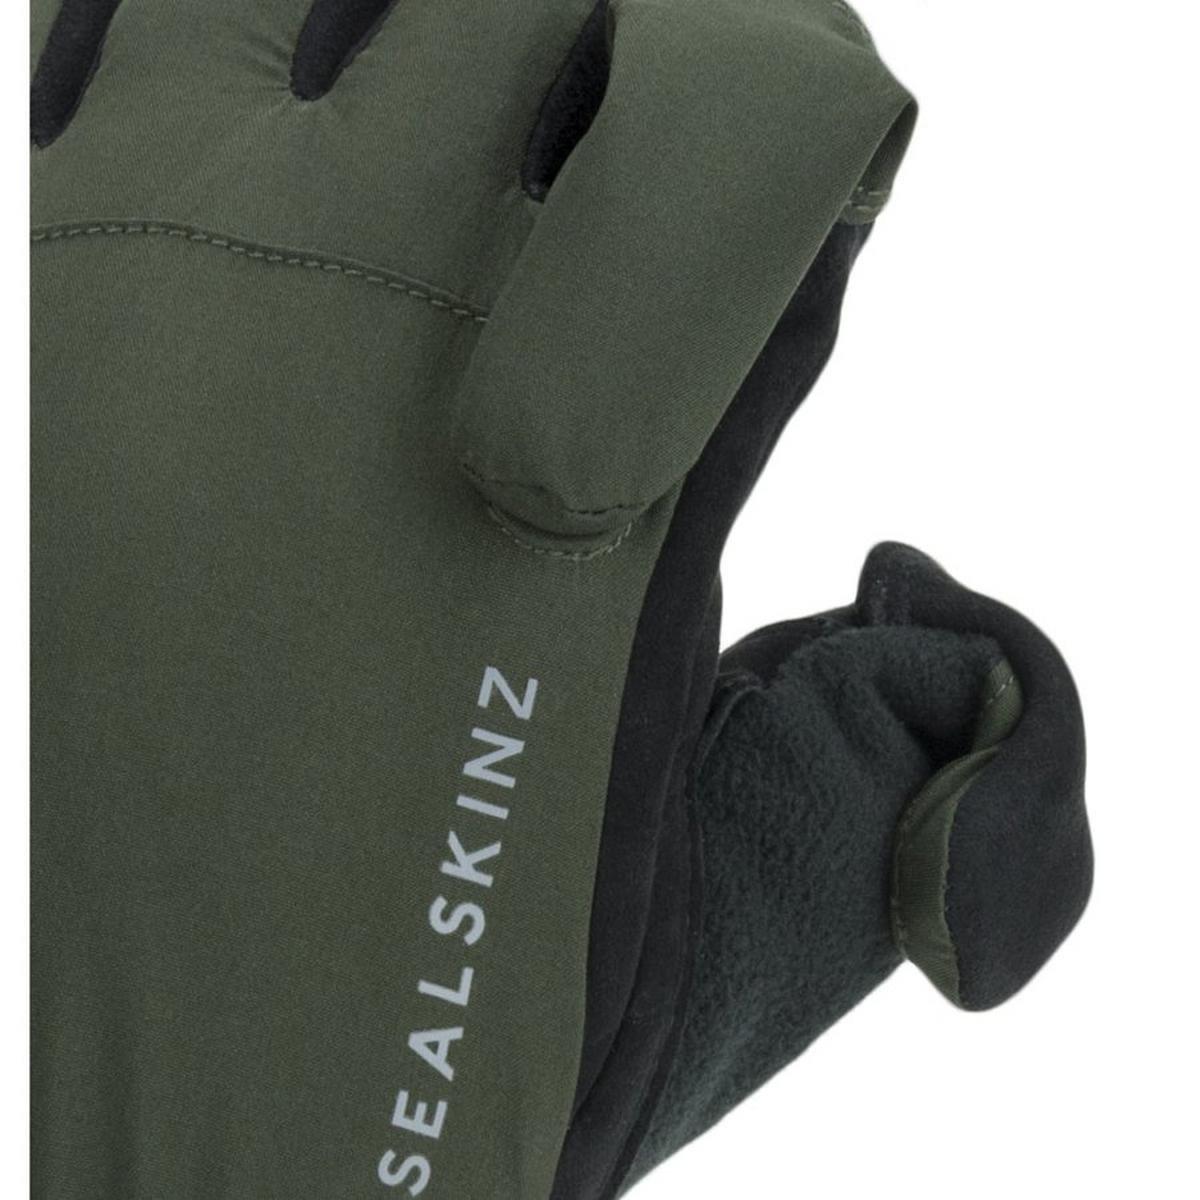 Sealskinz Unisex Stanford Glove - Green